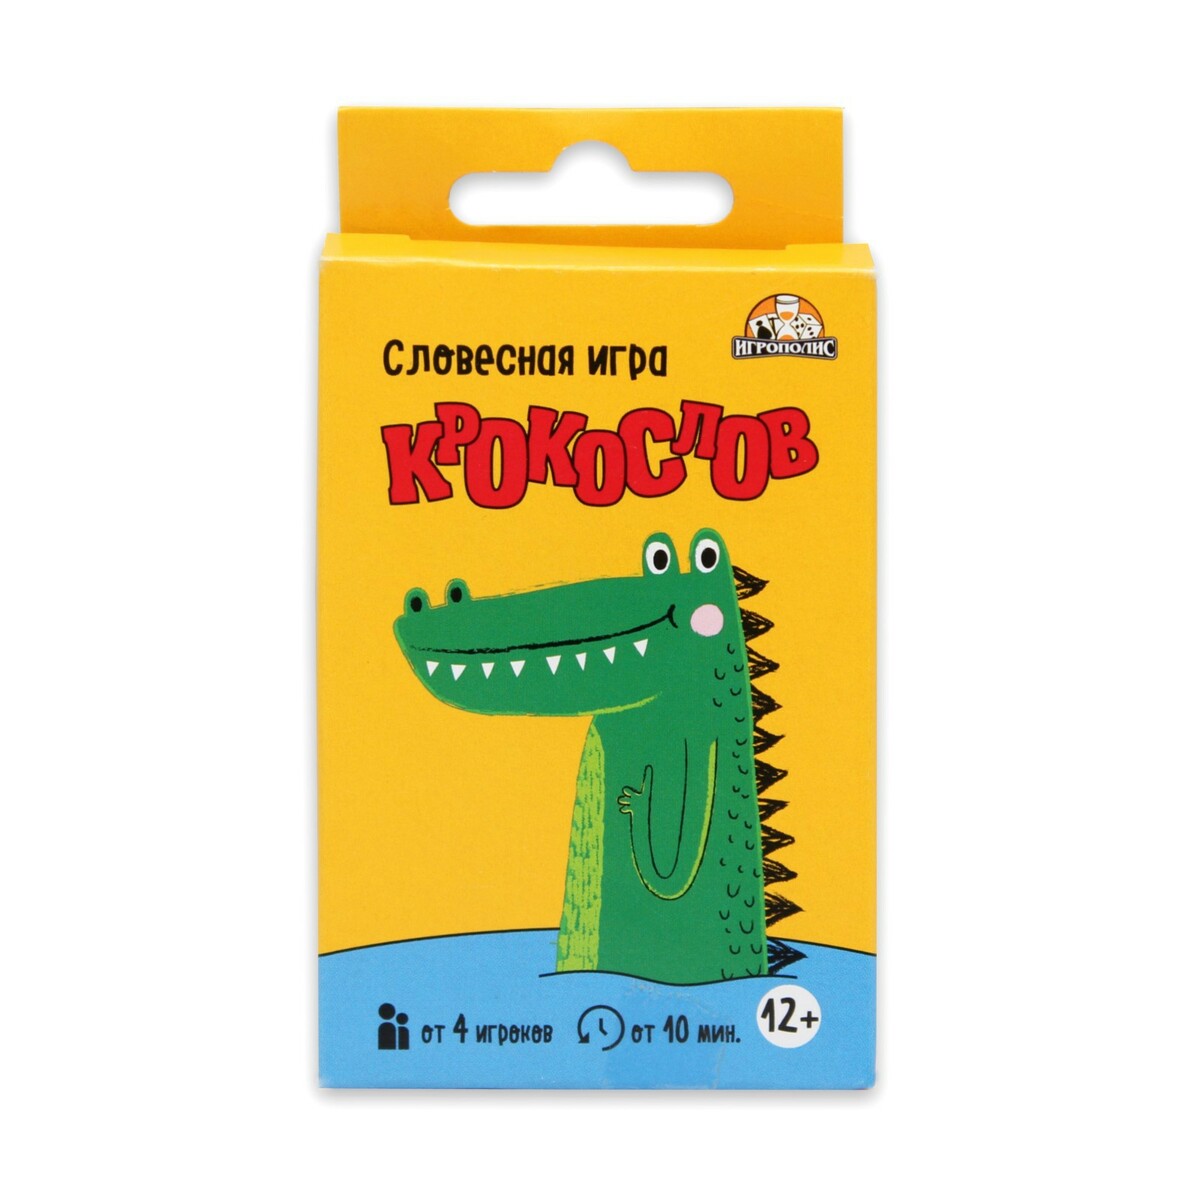 Карточная игра для веселой компании, крокодил крокодил